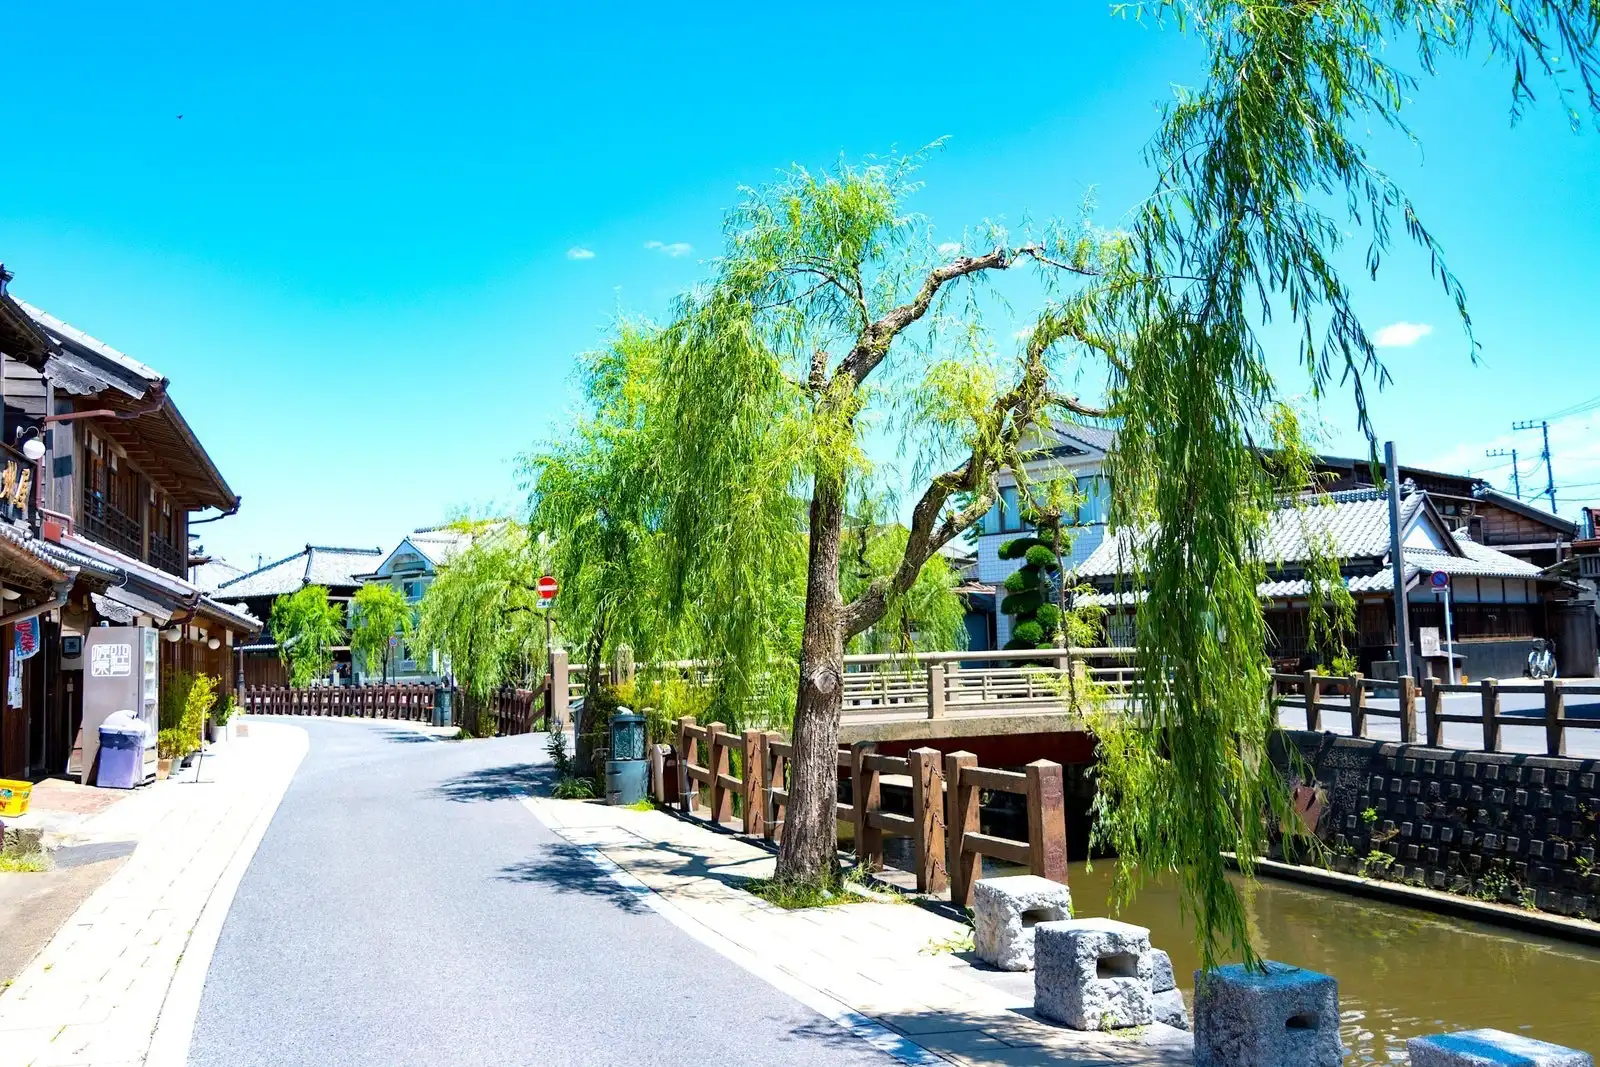 思い立ったら千葉県観光 大自然 歴史的建造物 アミューズメントパーク 魅力いっぱいの観光スポットがこんなにあっていいんですか 地域pr クールジャパンビデオ 日本の観光 旅行 グルメ 面白情報をまとめた動画キュレーションサイト Cool Japan Videos